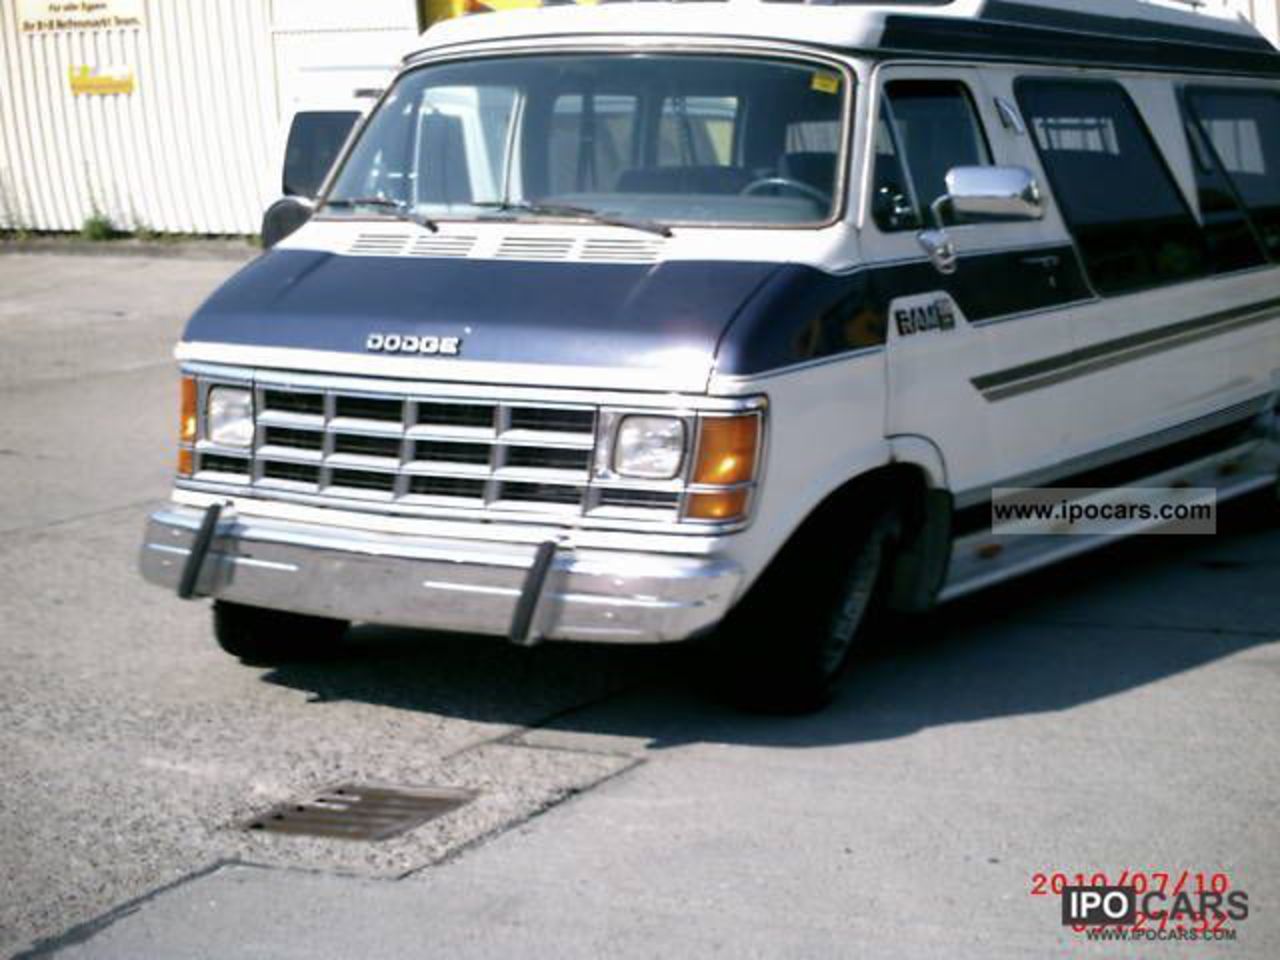 1993 Dodge RAM 200, Roadmaster, RV Van / Minibus